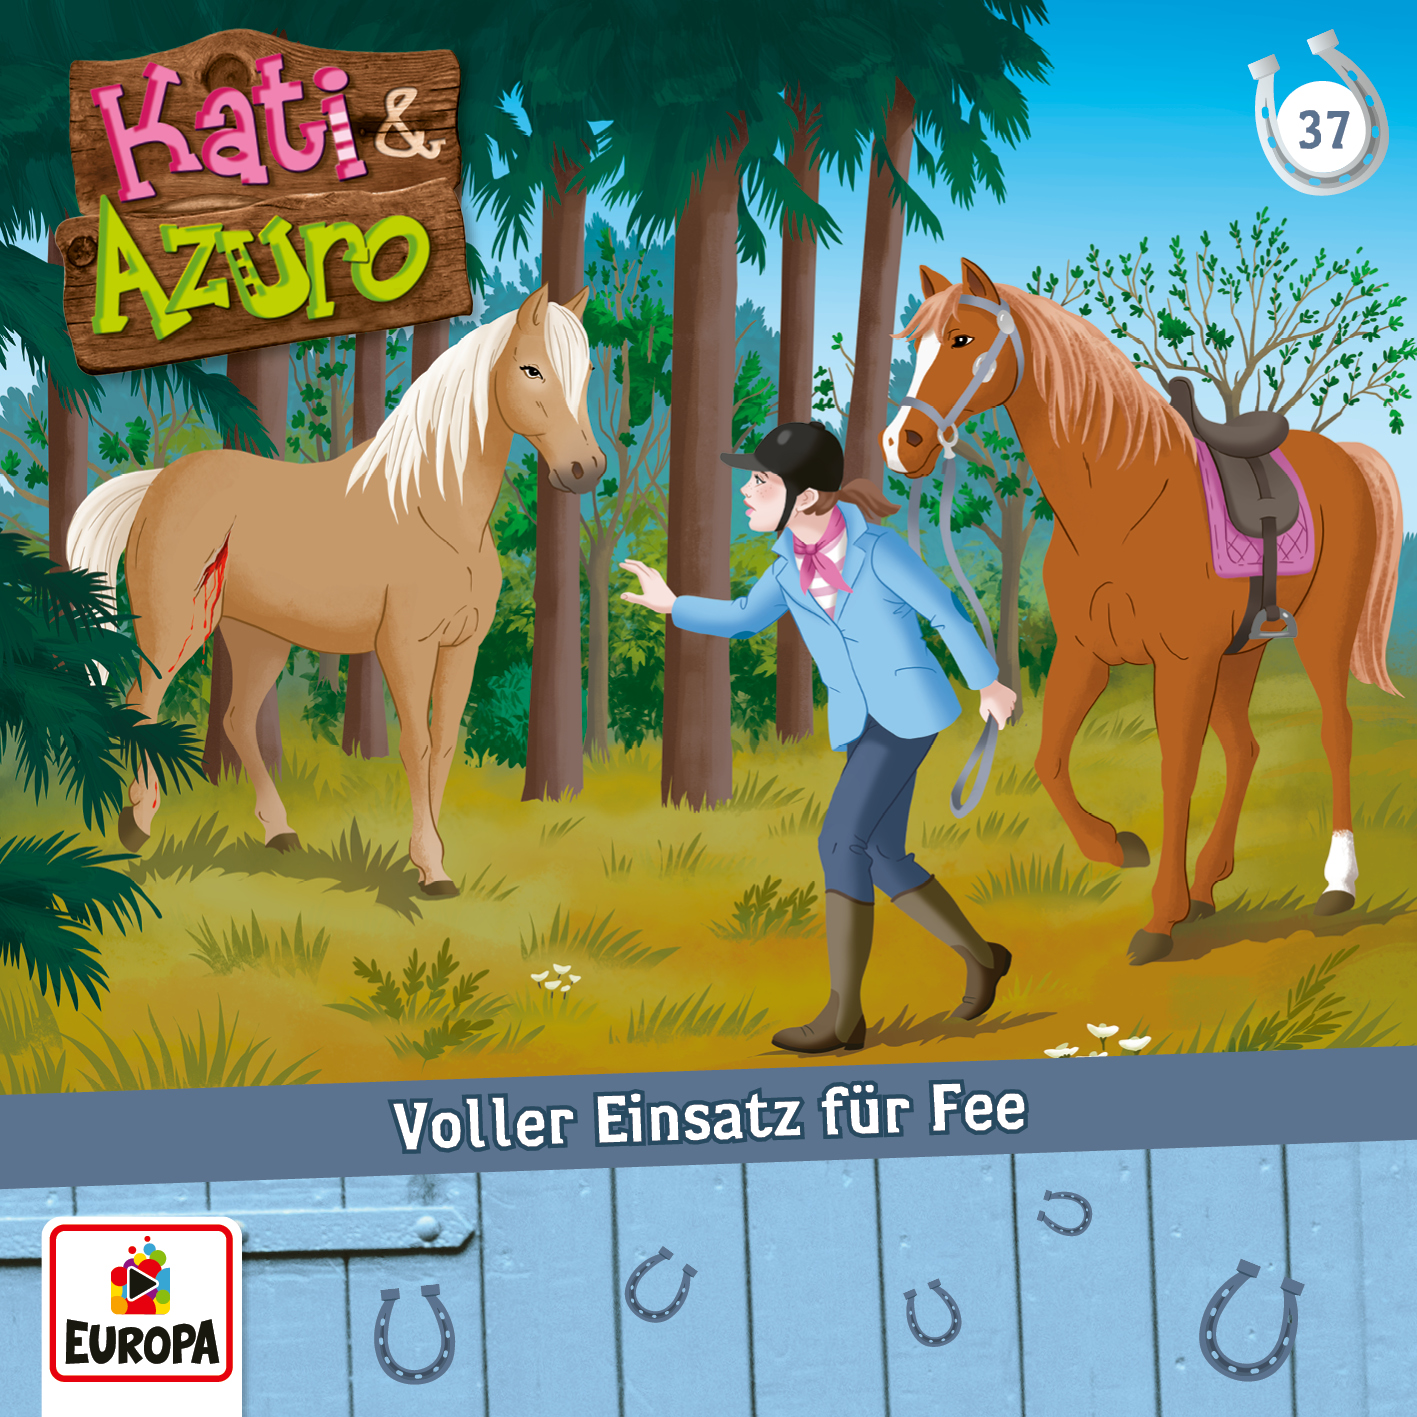 Kati & Azuro - Voller Einsatz für Fee